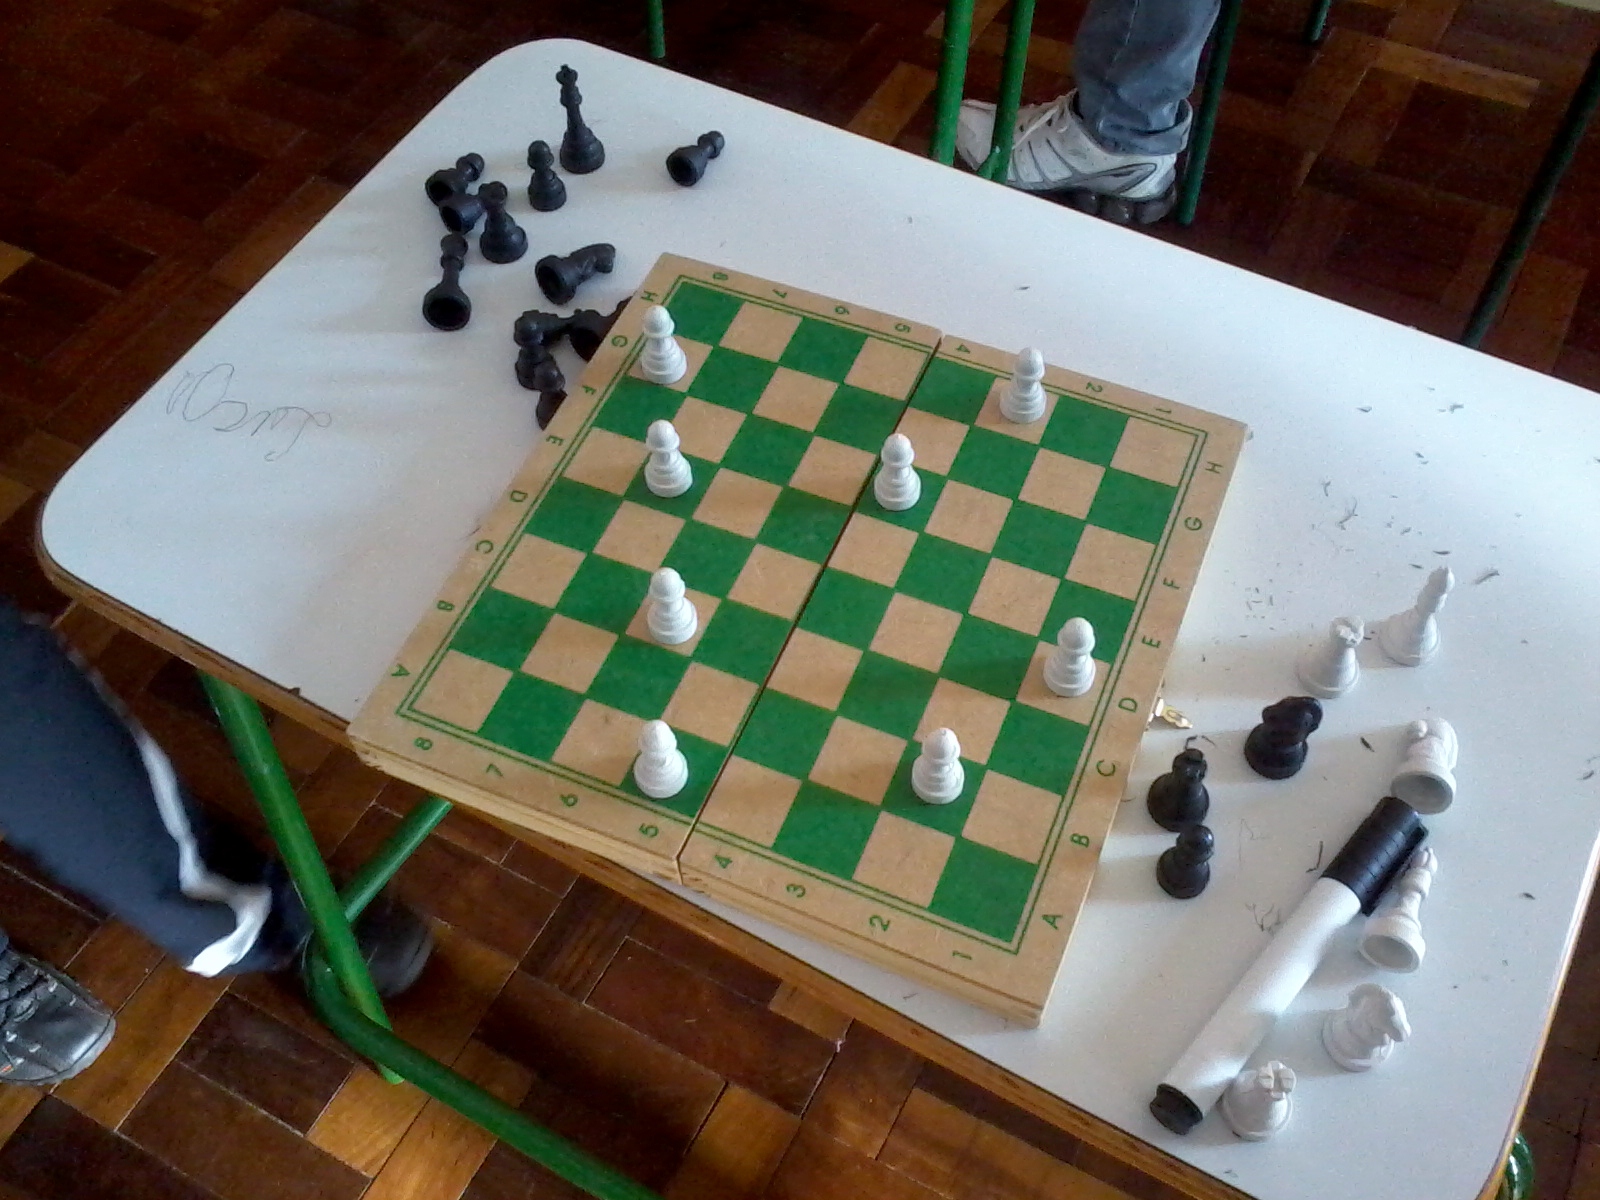 Matemática e Multimídia: Como fazer um tabuleiro de xadrez no Processing?